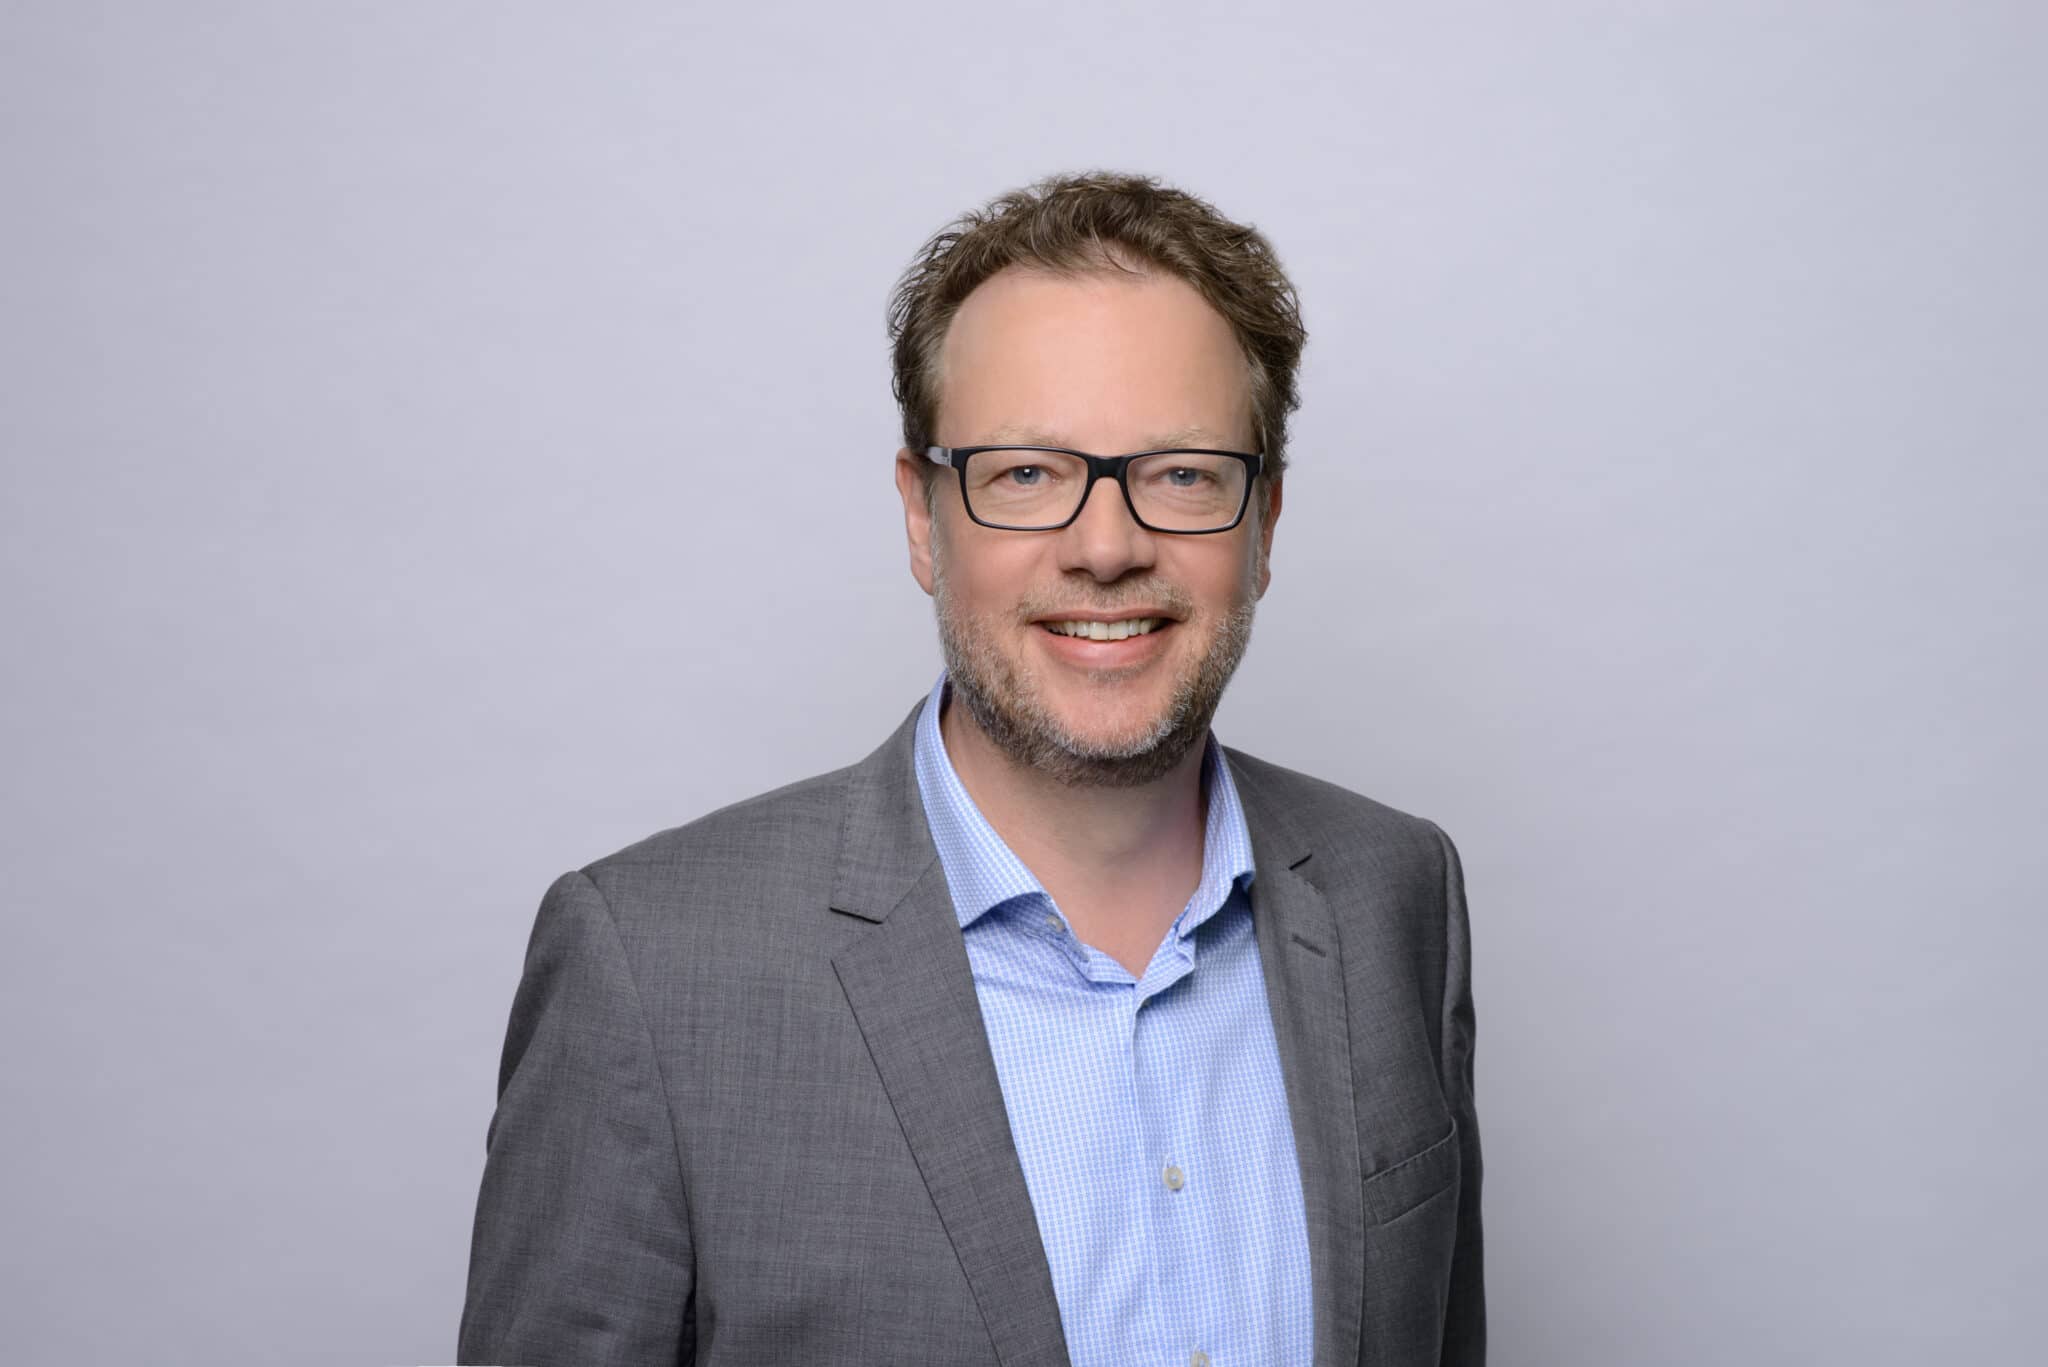 Carsten Schröer, Professor BWL – Messe-, Kongress- und Eventmanagement an der DHBW Mannheim